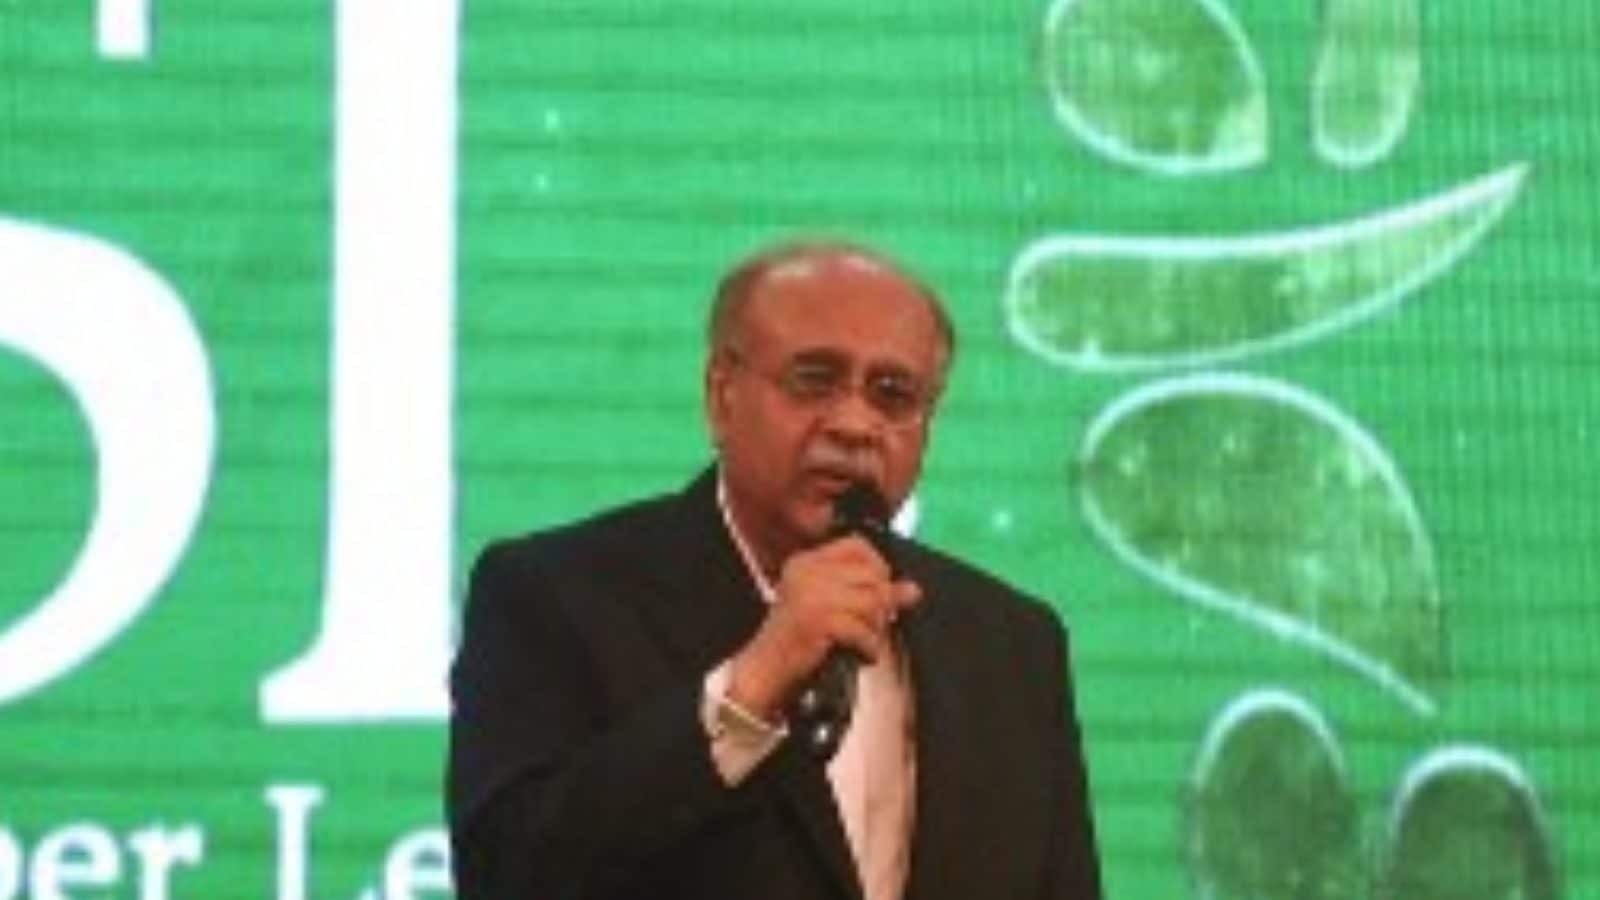 नजम सेठी के पाकिस्तान क्रिकेट बोर्ड के अध्यक्ष के रूप में रमिज़ राजा की जगह लेने की संभावना: रिपोर्ट